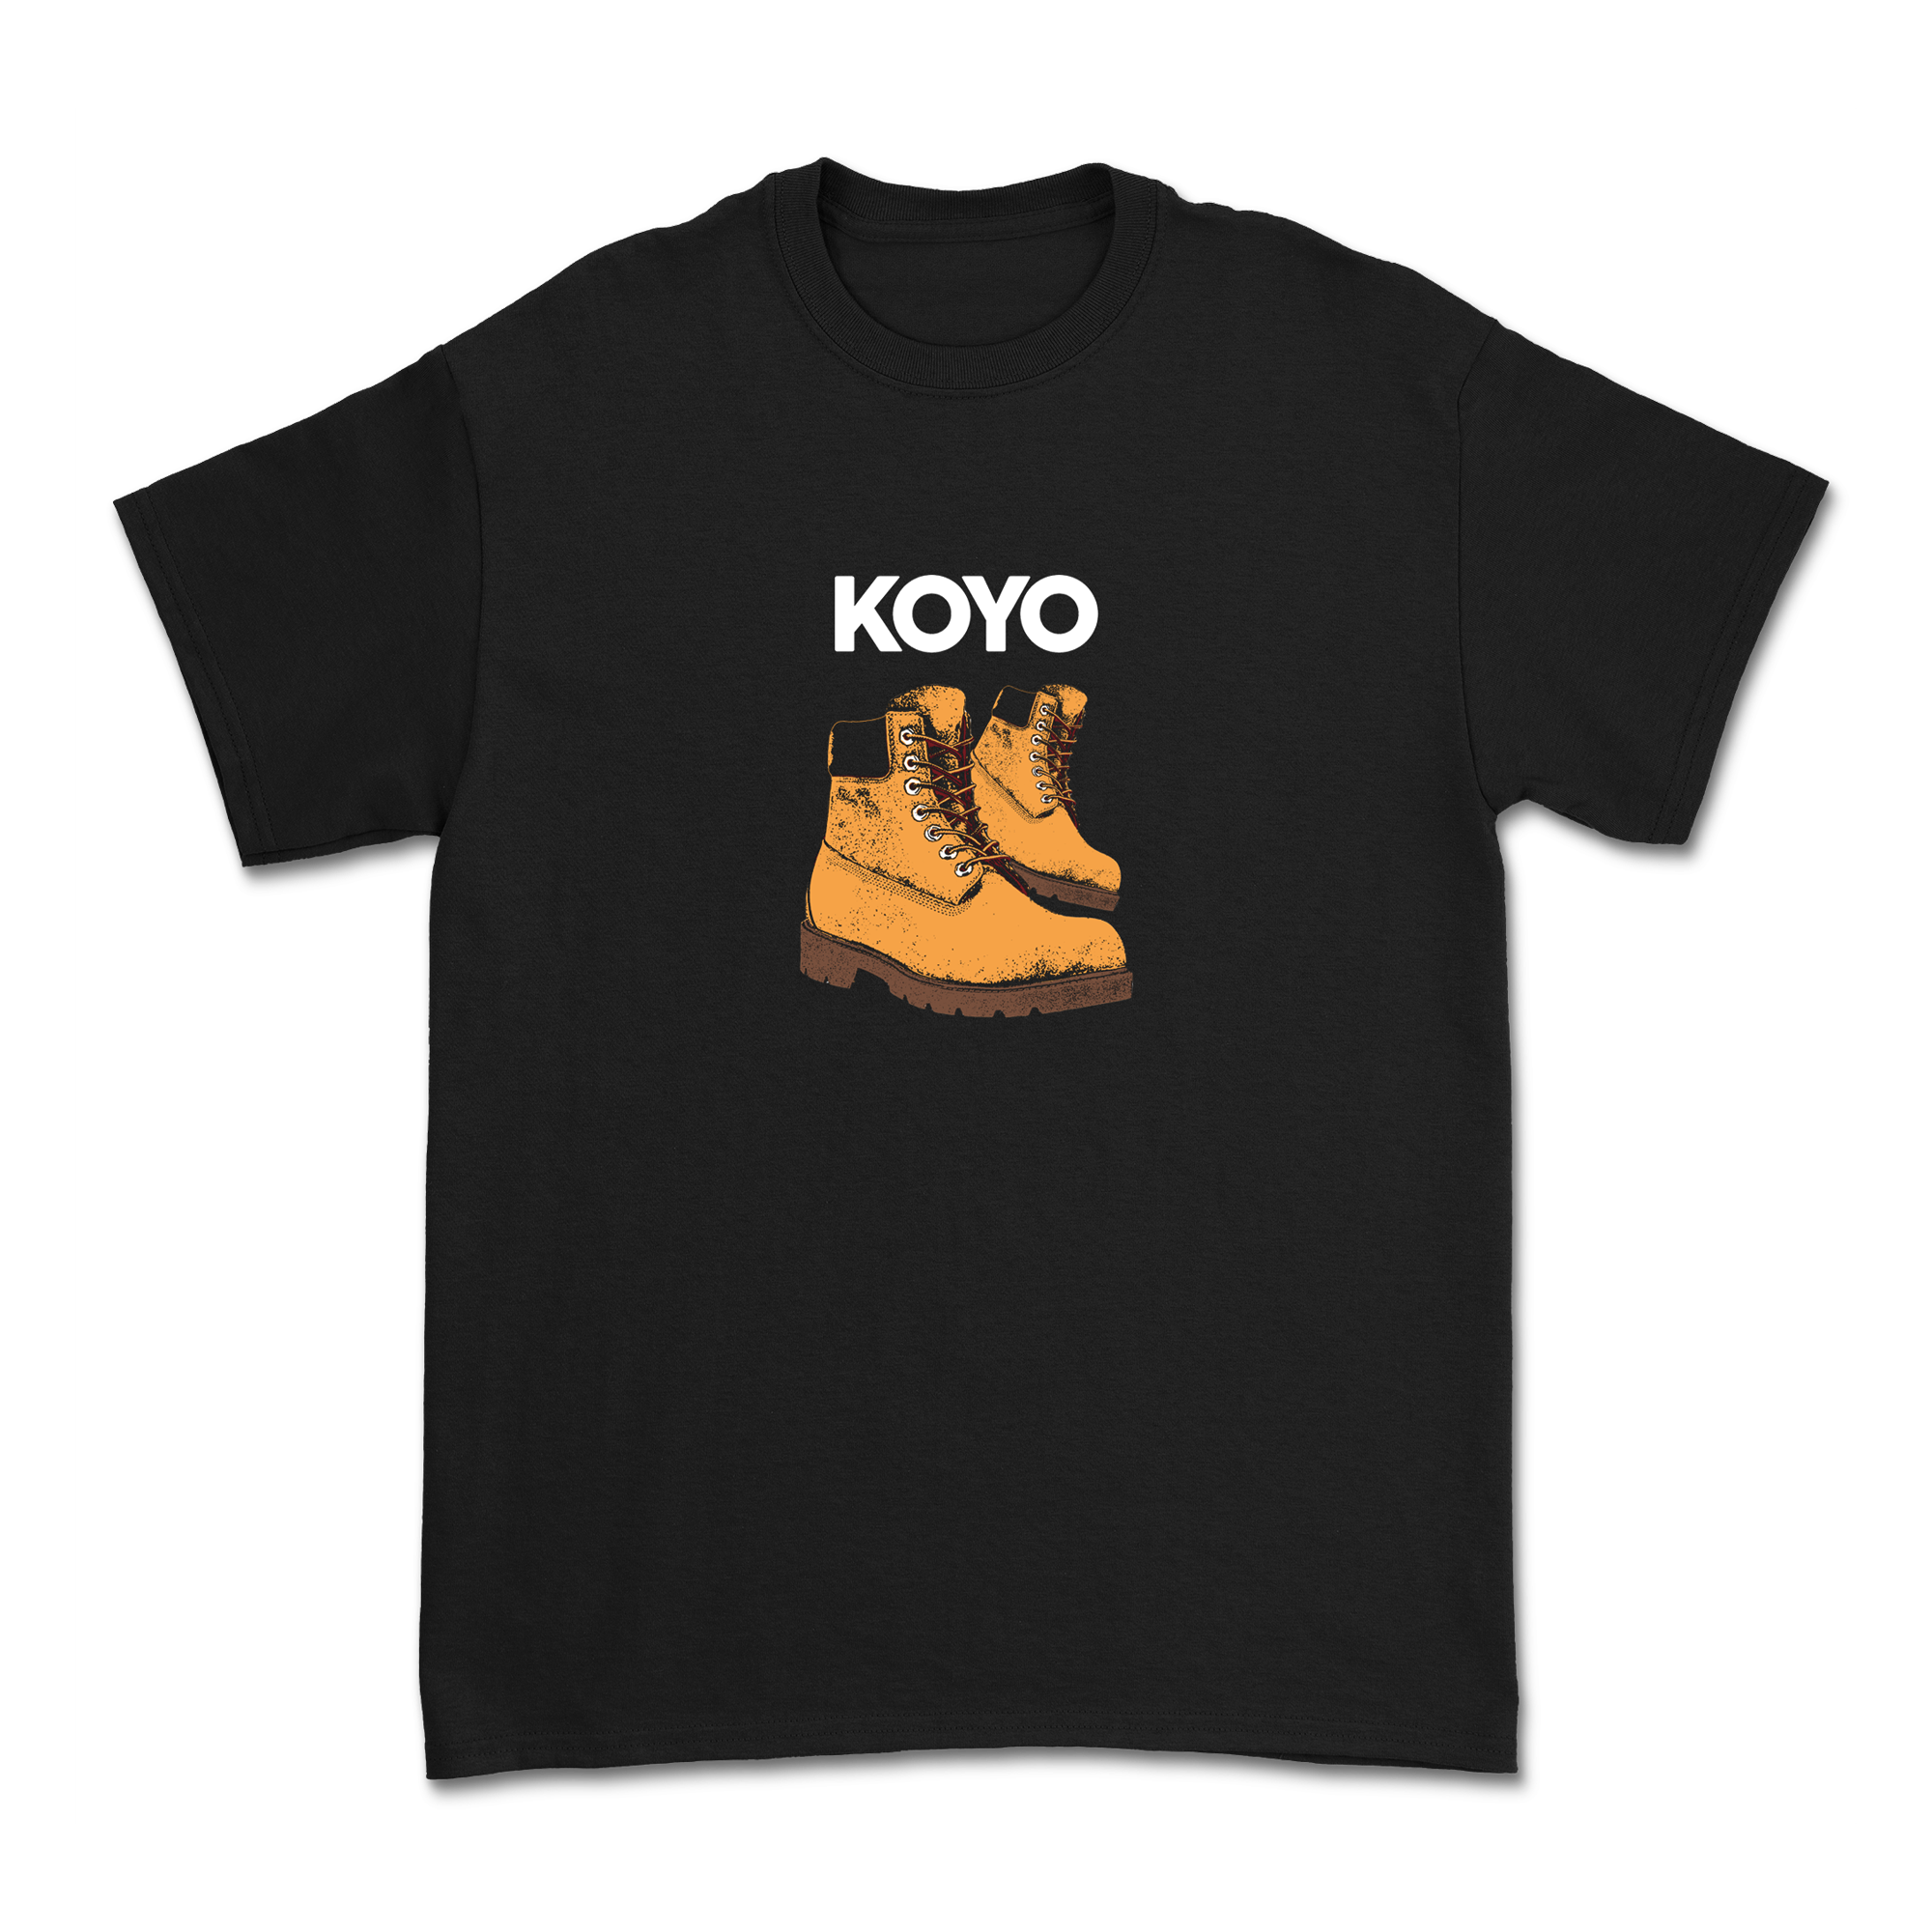 Koyo - Timbs T-Shirt